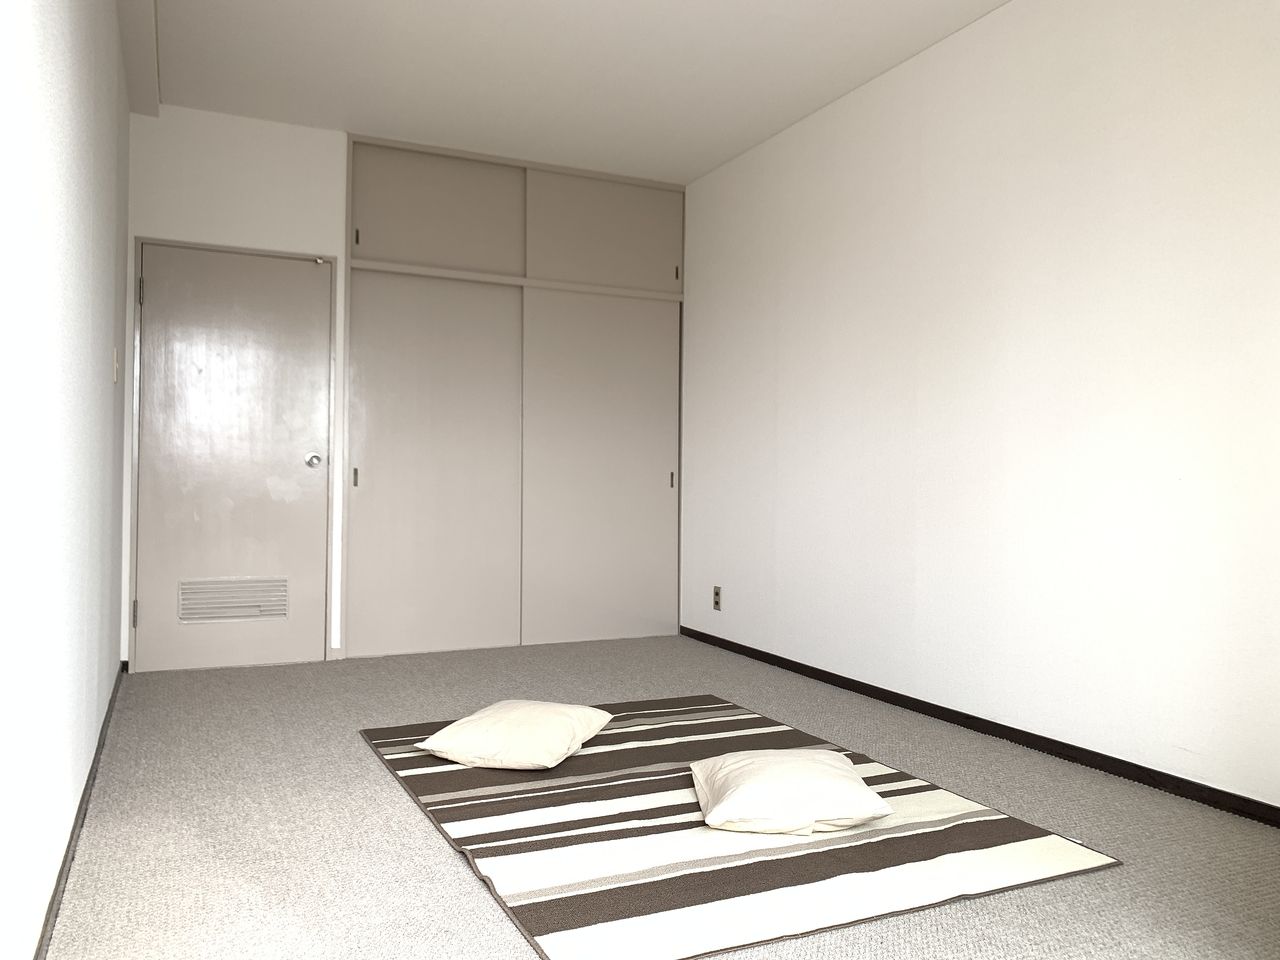 ハイツ富士401号室寝室の写真です